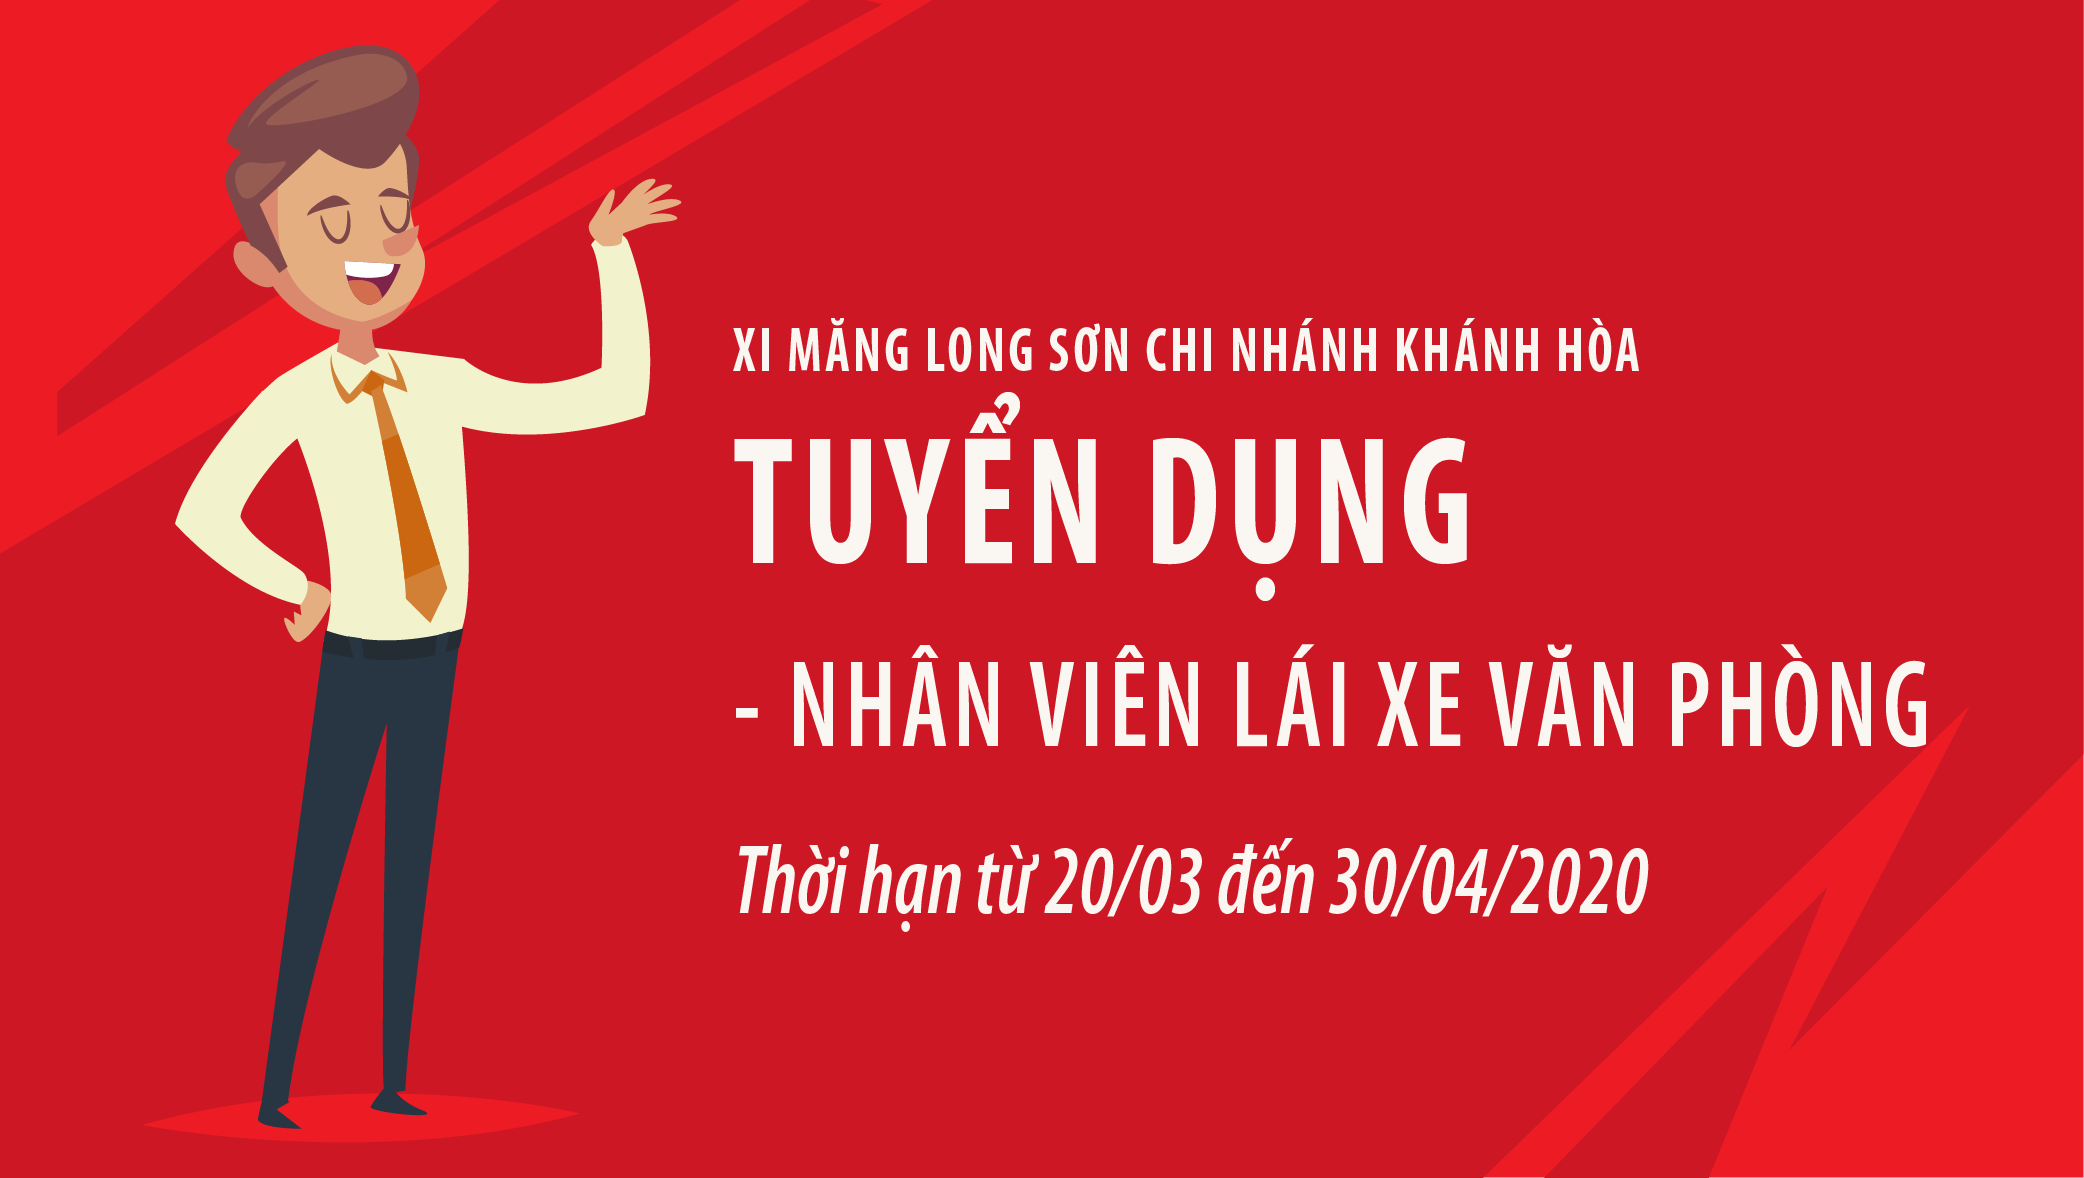 Thông báo: Tuyển dụng lái xe văn phòng – Xi măng Long Sơn chi nhánh Khánh Hòa